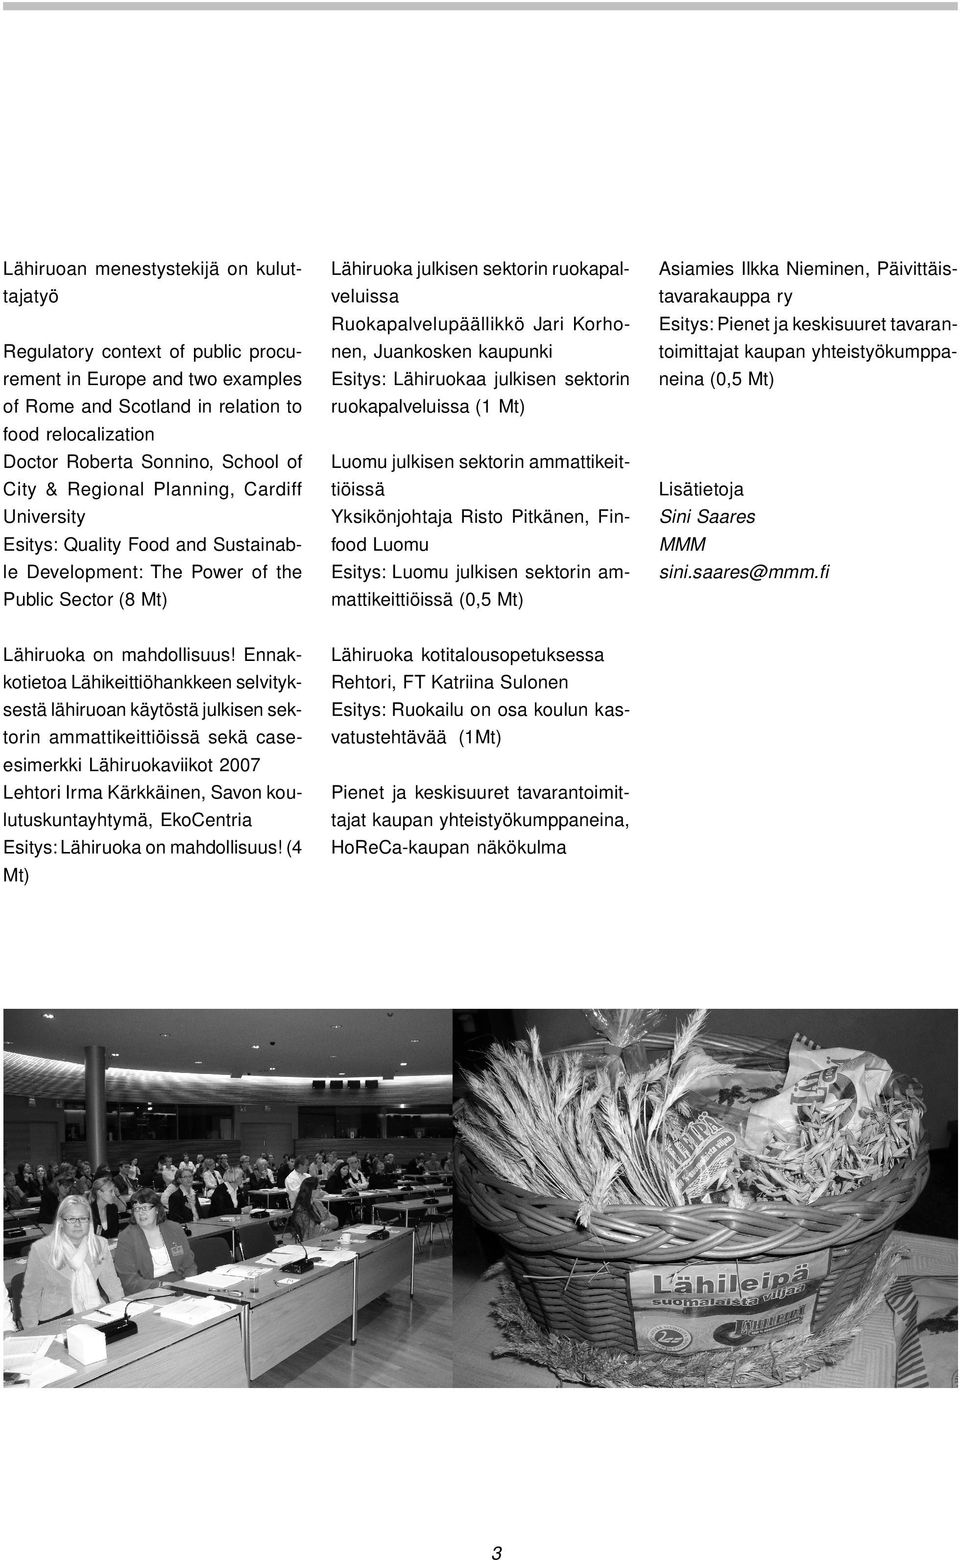 julkisen sektorin ruokapalveluissa (1 Mt) neina (0,5 Mt) food relocalization Doctor Roberta Sonnino, School of Luomu julkisen sektorin ammattikeit- City & Regional Planning, Cardiff University